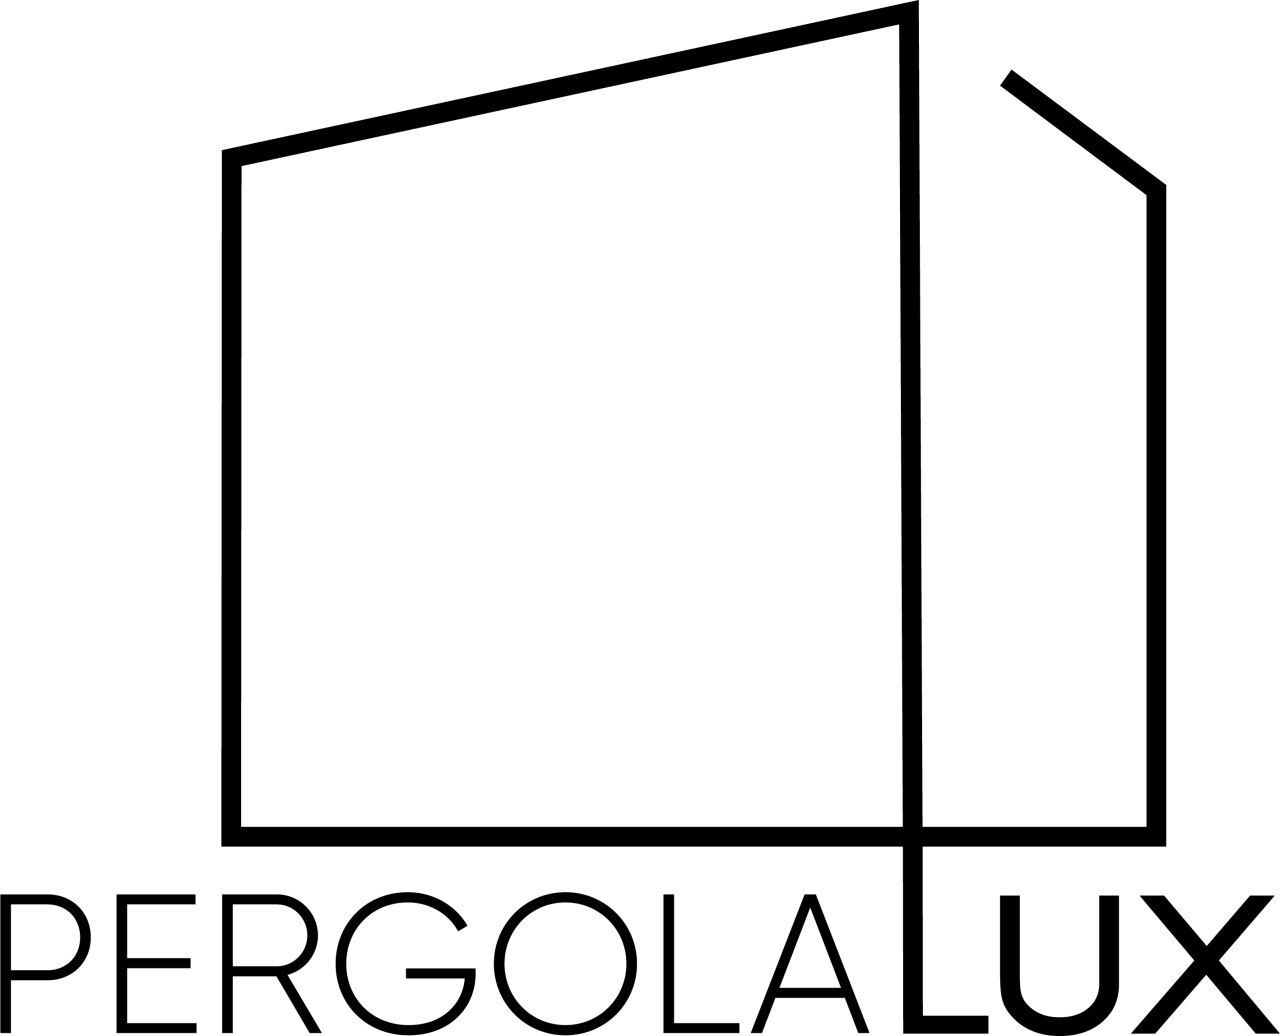 Pergola-LUX